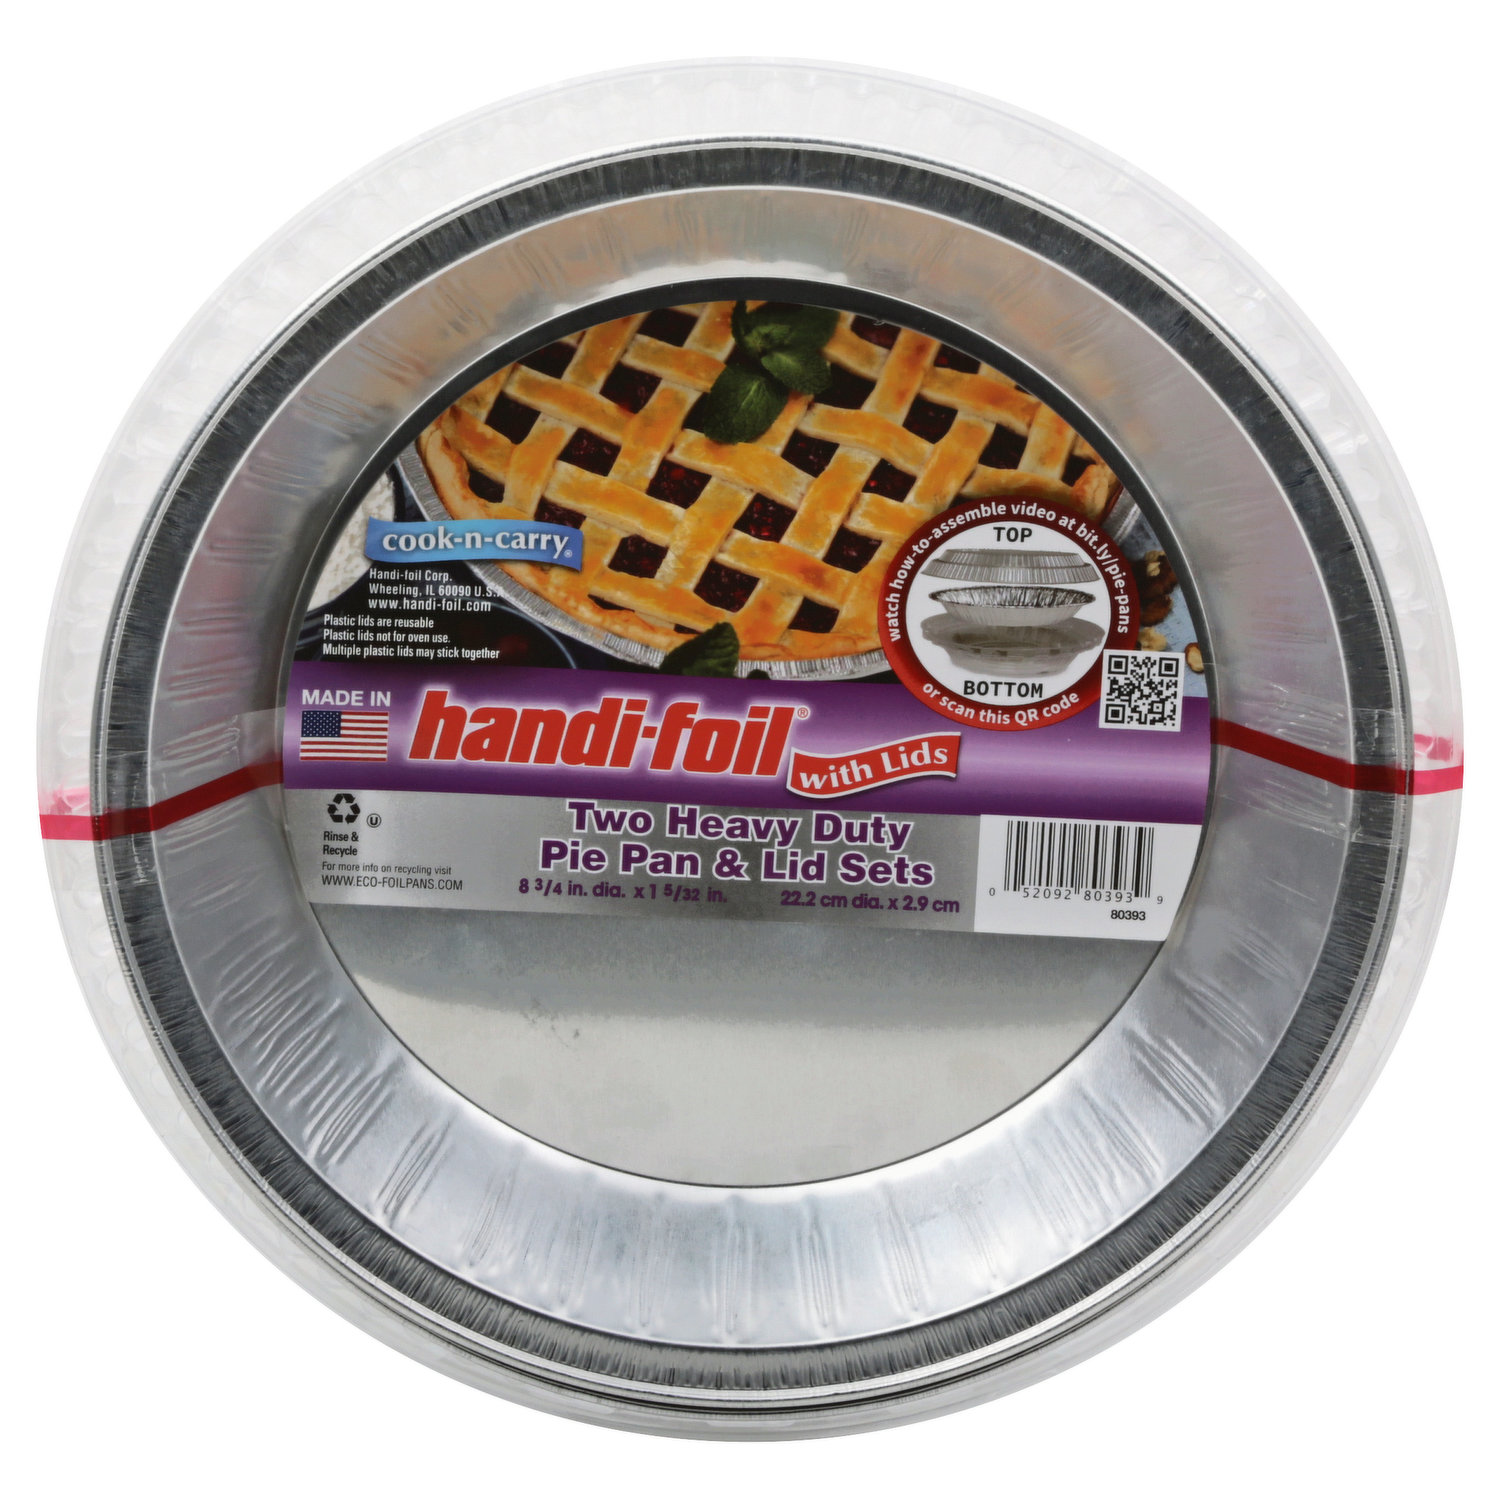 Save on Handi-Foil ECO-Foil Cook-n-Carry Half Sheet Cake Pan & Lid